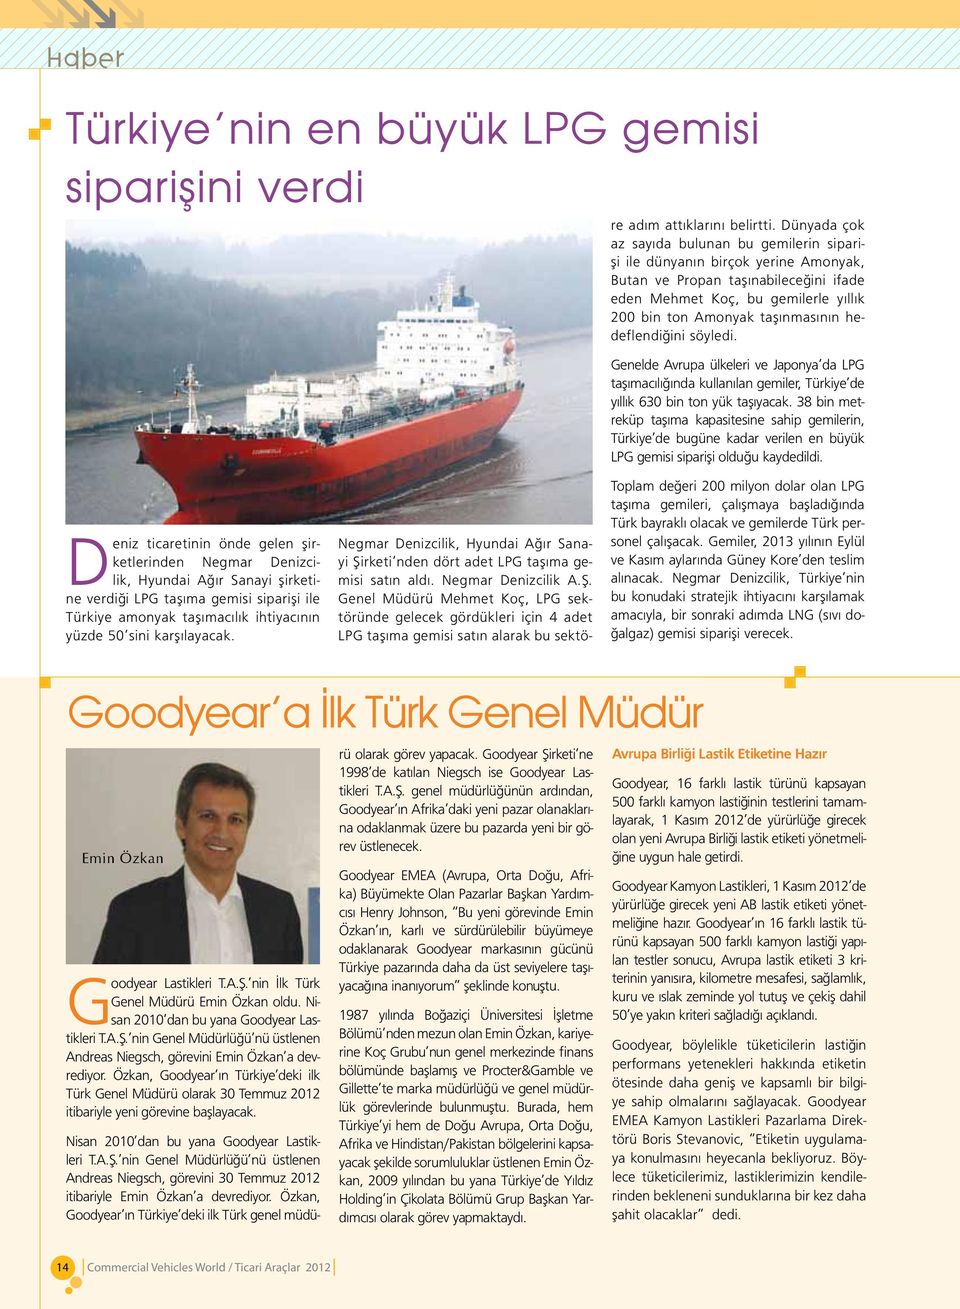 Genel Müdürü Mehmet Koç, LPG sektöründe gelecek gördükleri için 4 adet LPG taşıma gemisi satın alarak bu sektöre adım attıklarını belirtti.